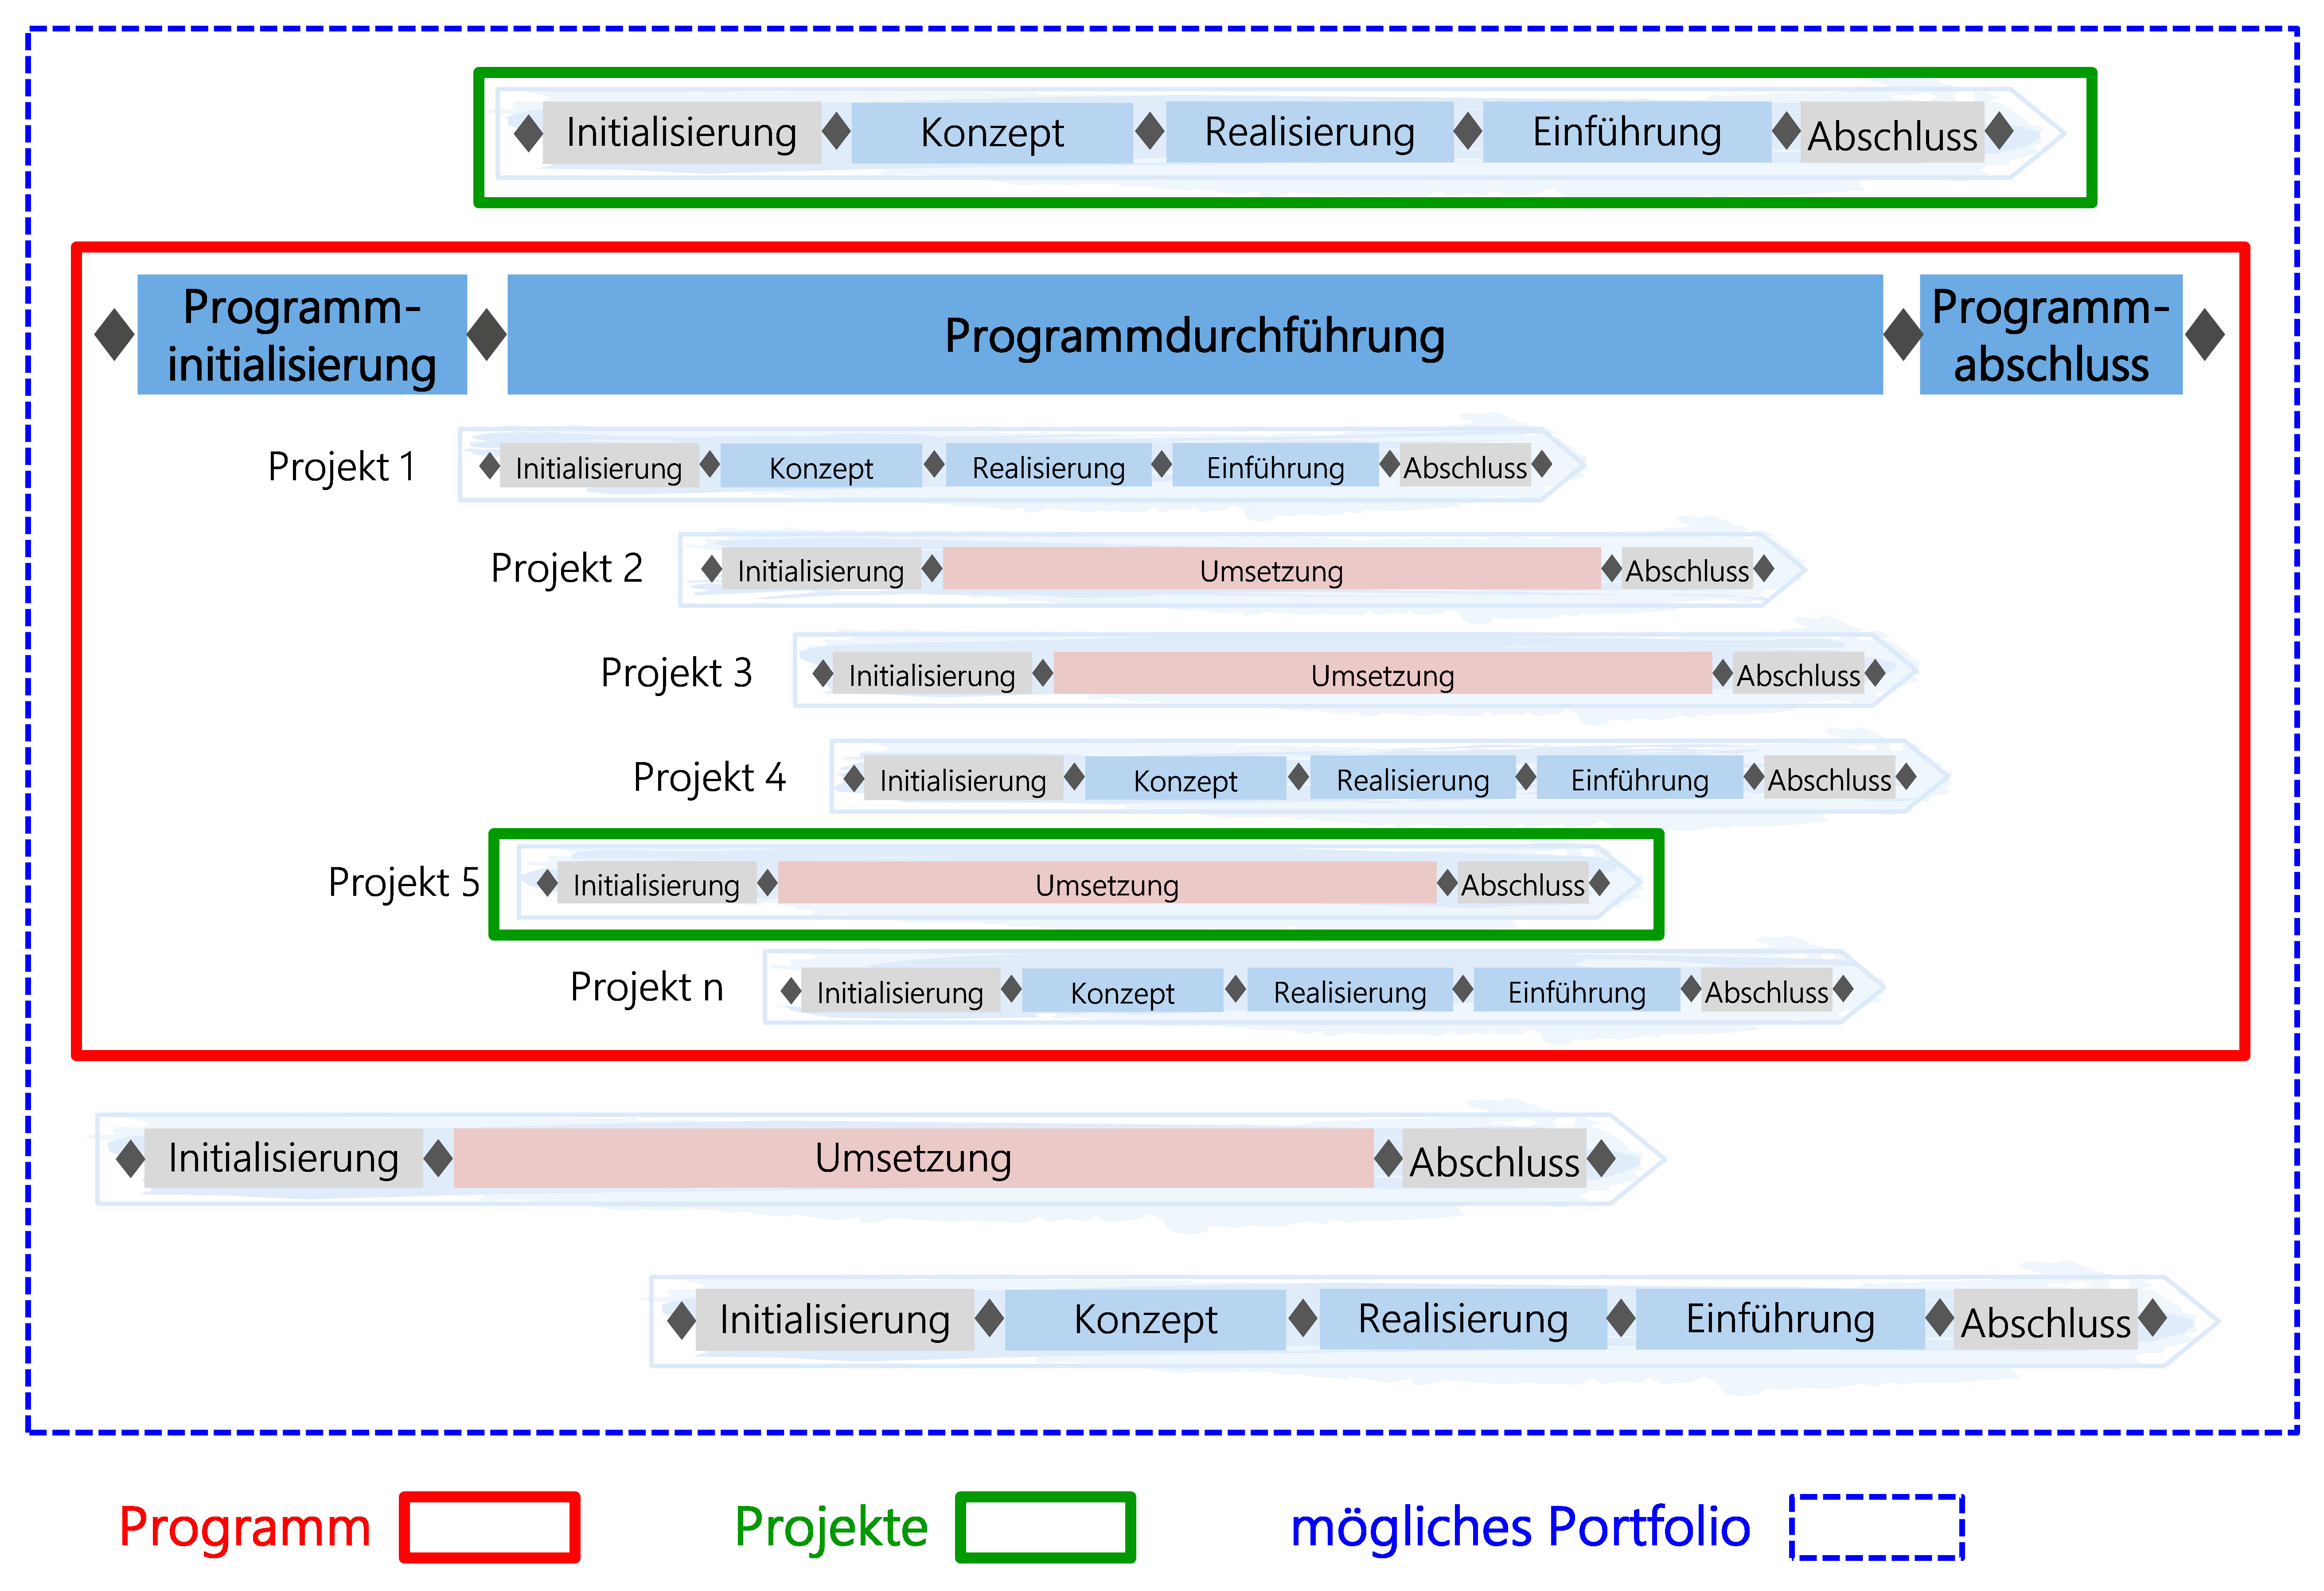 Abbildung 4: Gleichzeitiges Führen von Projekten und Programmen in einer Stammorganisation